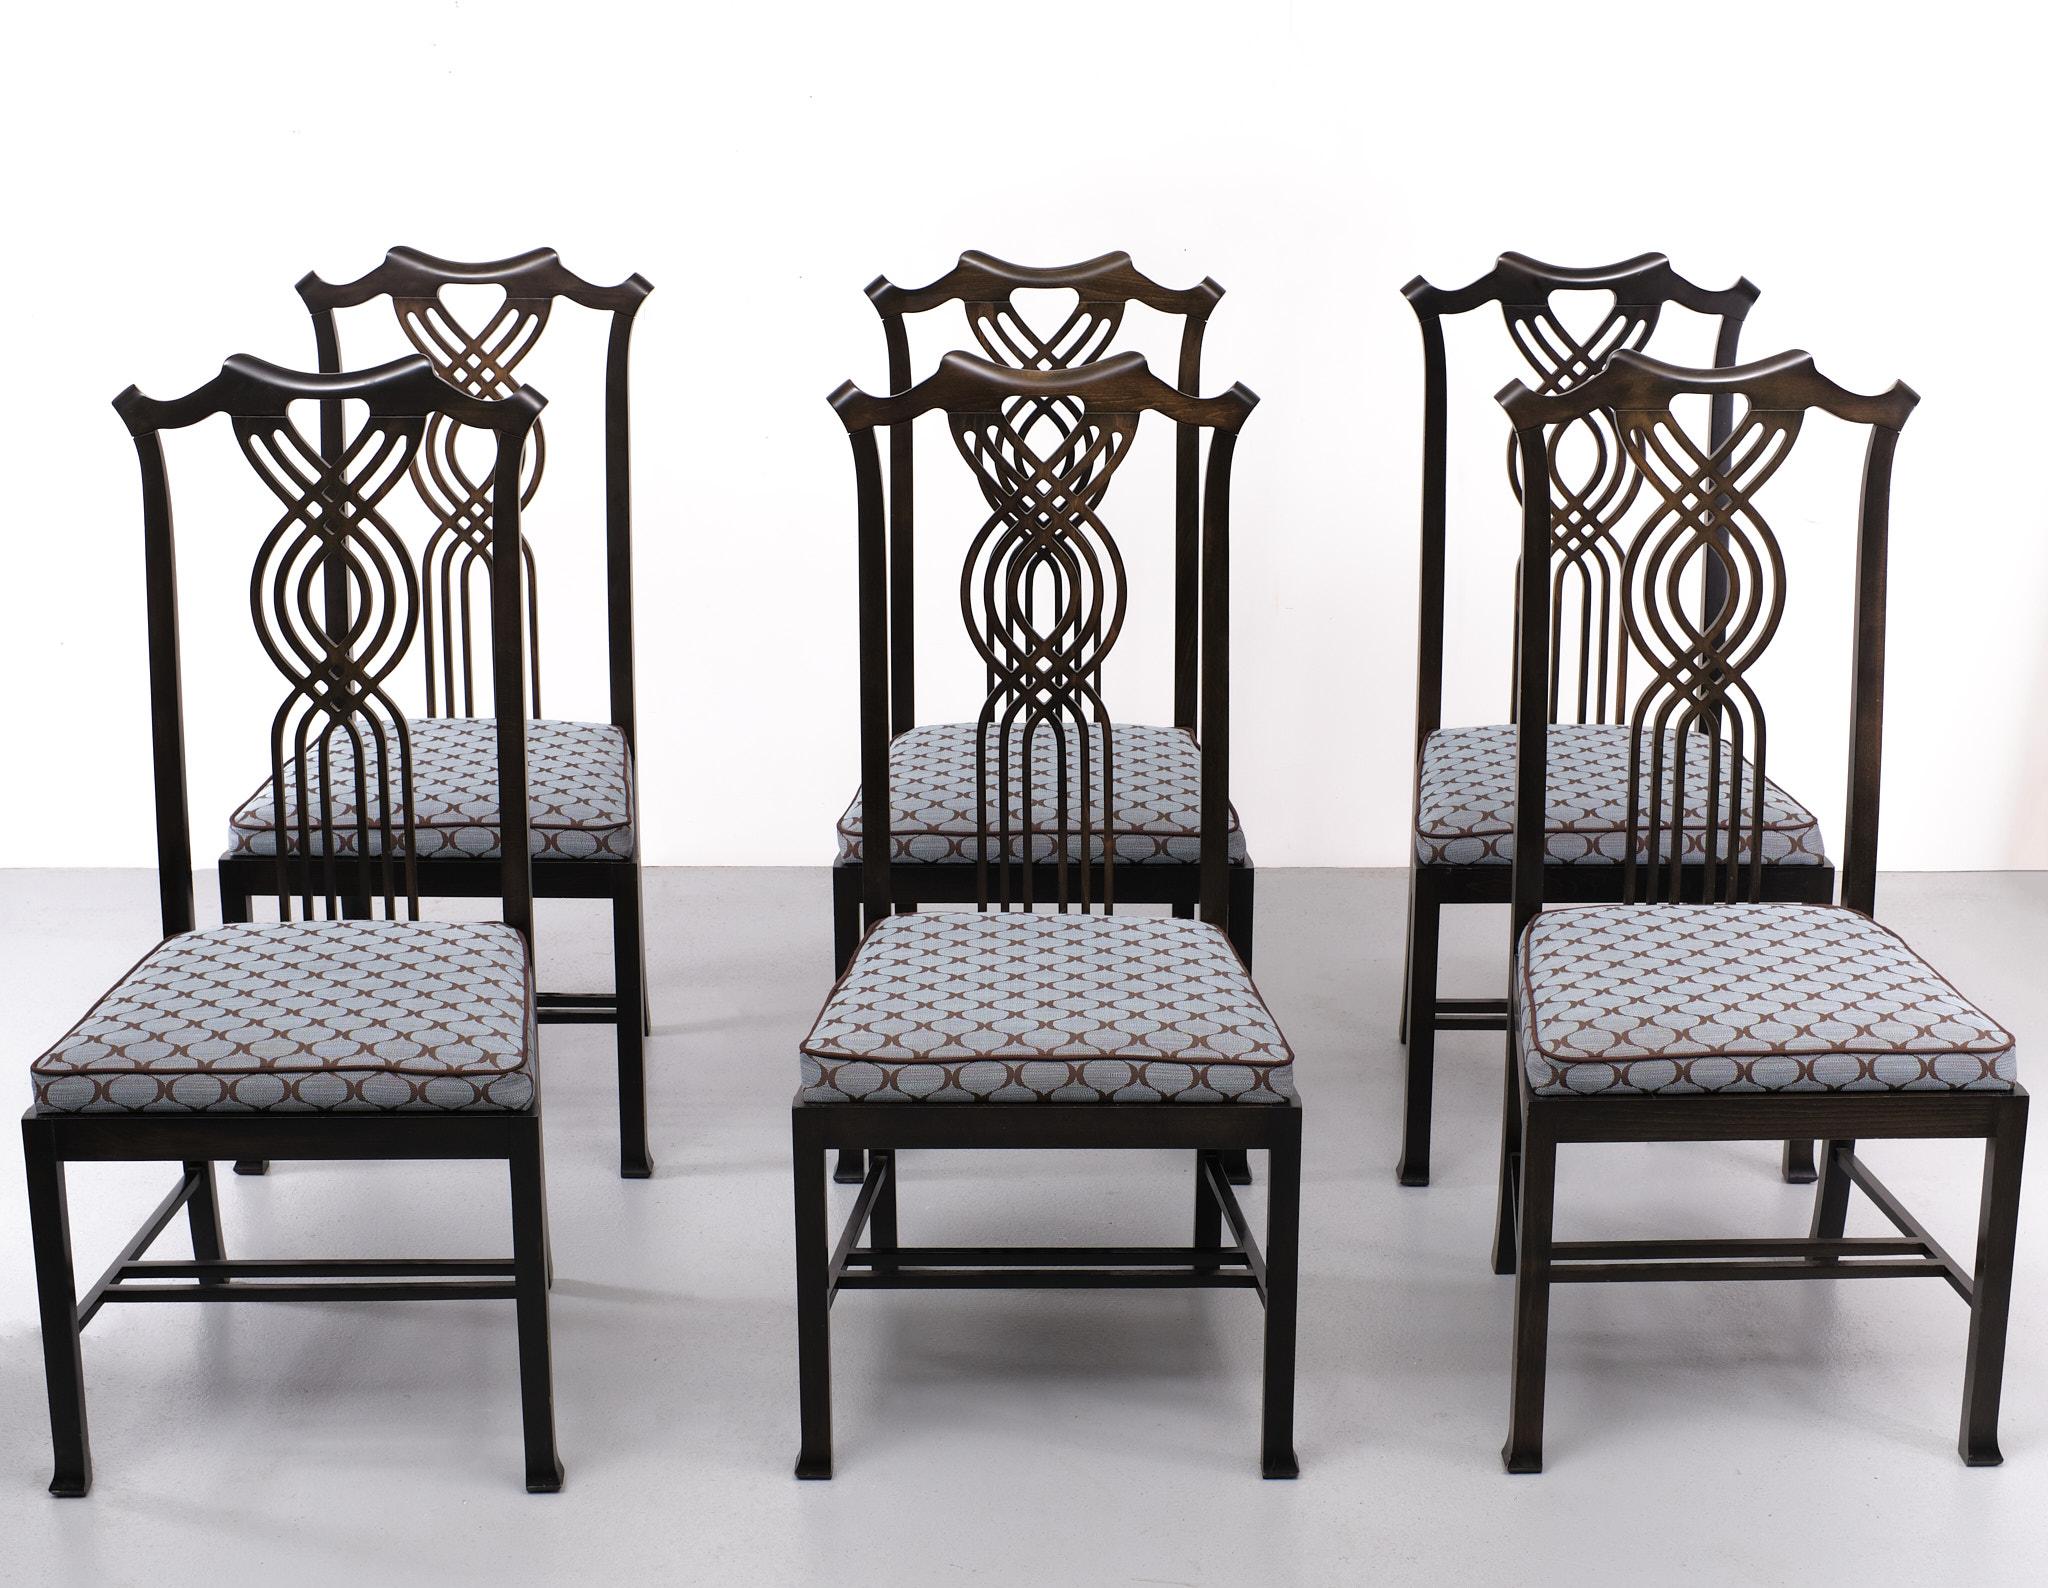 Atemberaubendes Set eleganter Esszimmerstühle, hergestellt von Giorgetti  Giorgetti ist einer der bedeutendsten italienischen Möbeldesigner.  gegründet von Luigi Giorgetti. Die Entwürfe von Giorgetti sind ihrer Zeit immer voraus und setzen Trends im